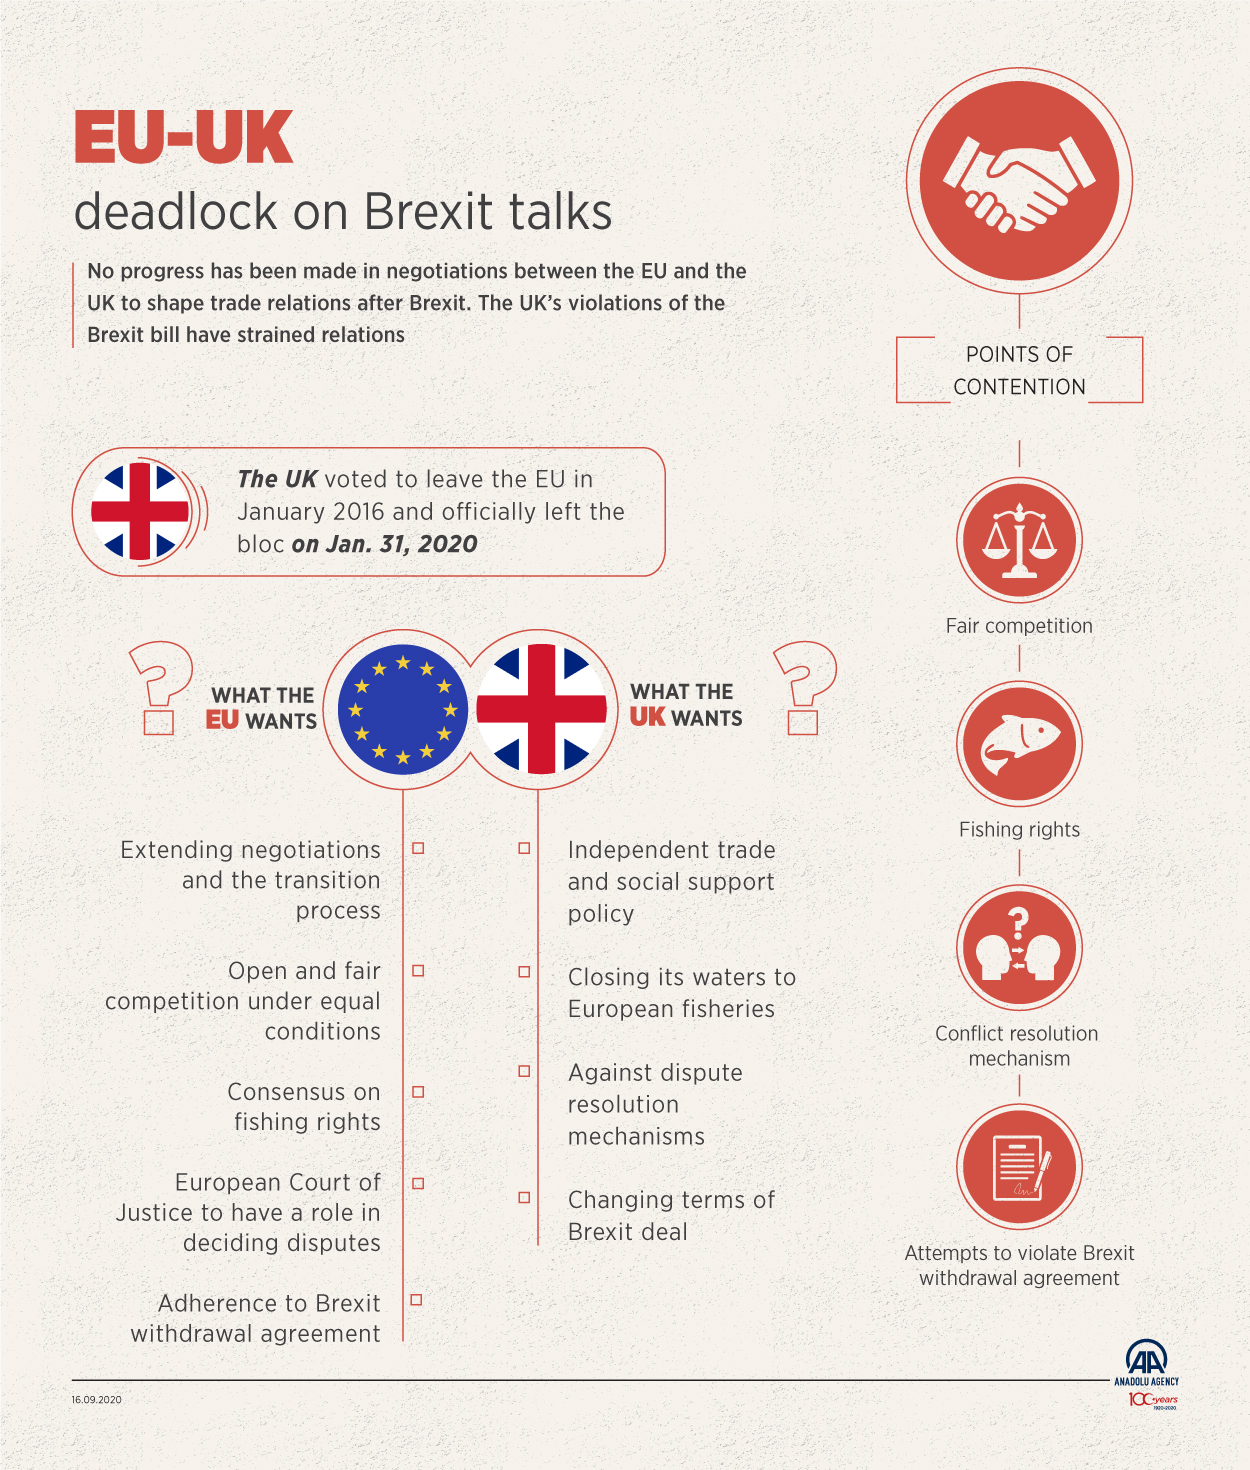 EU-UK deadlock on Brexit talks